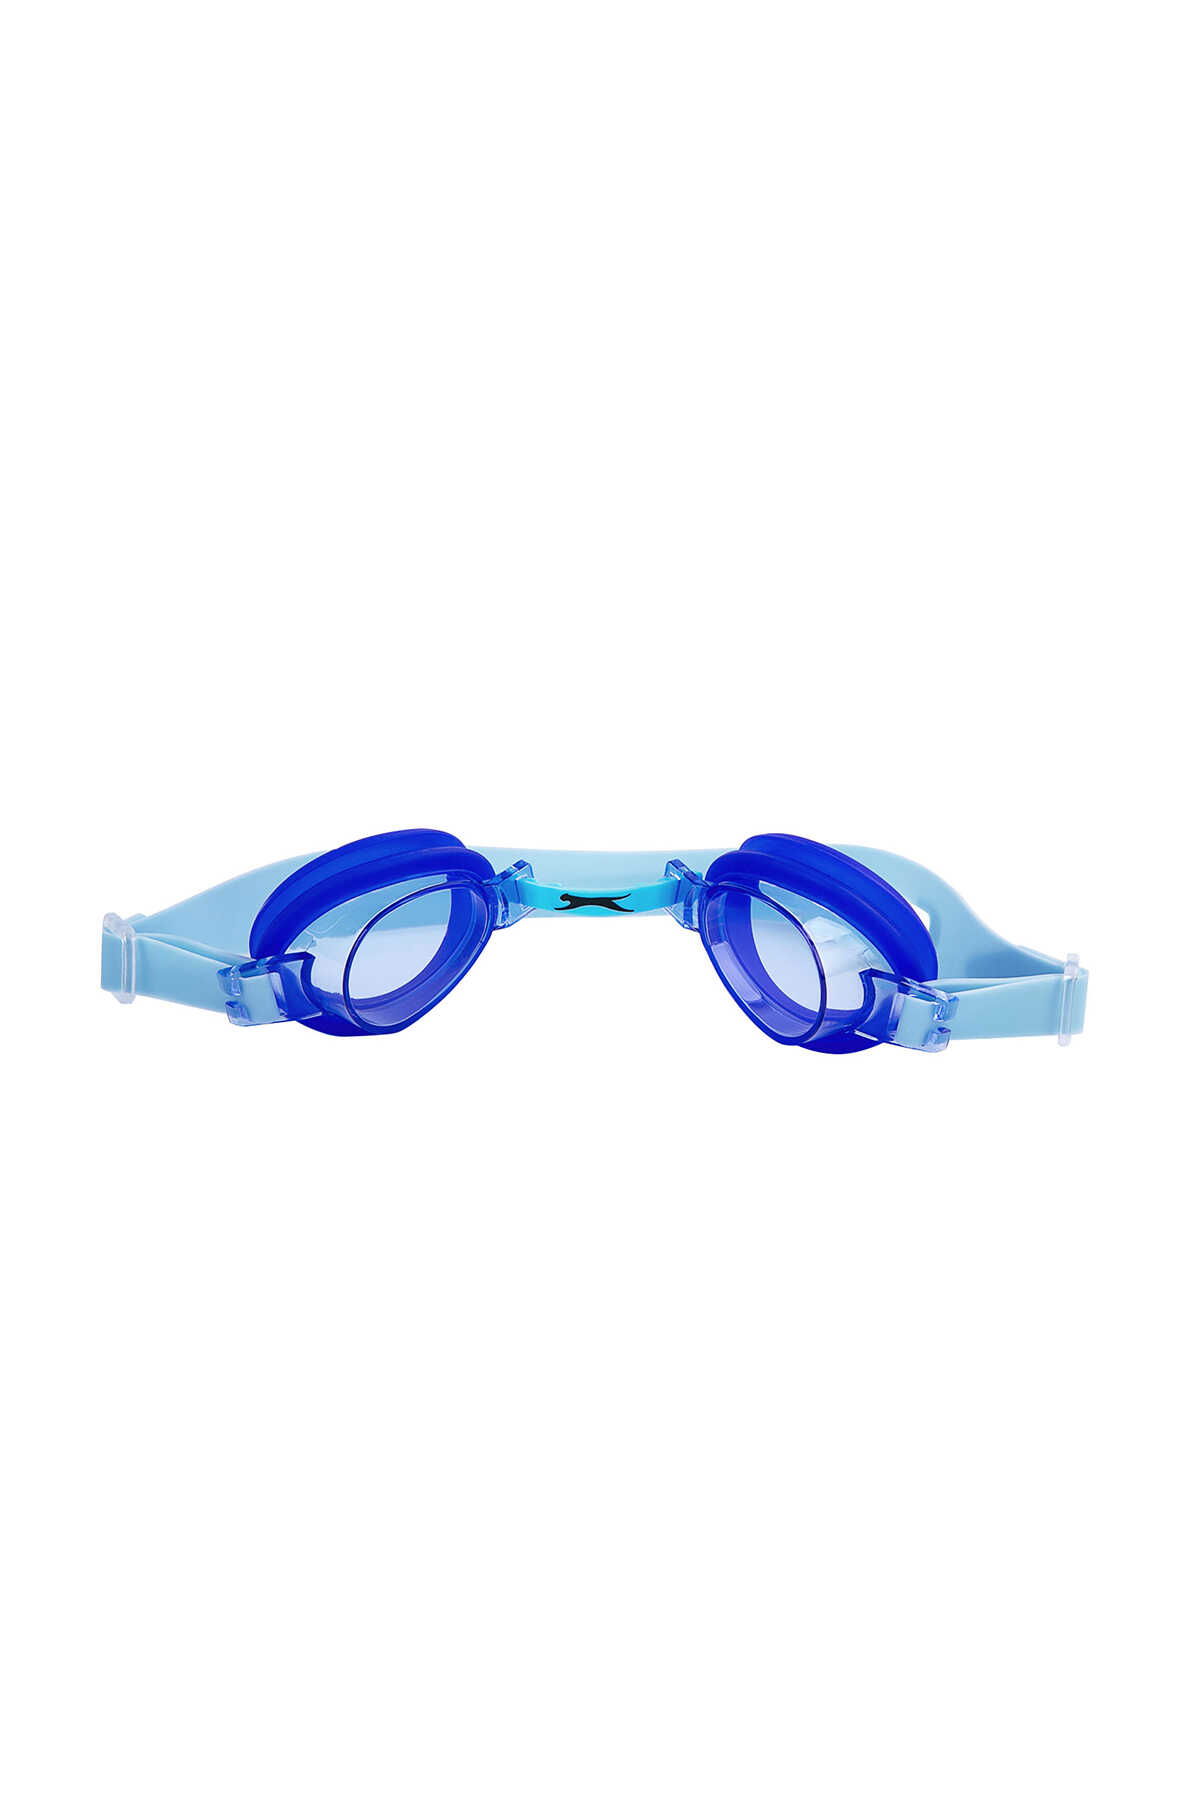 Slazenger - Slazenger Wave 2546 Unisex Çocuk Yüzücü Gözlüğü Mavi